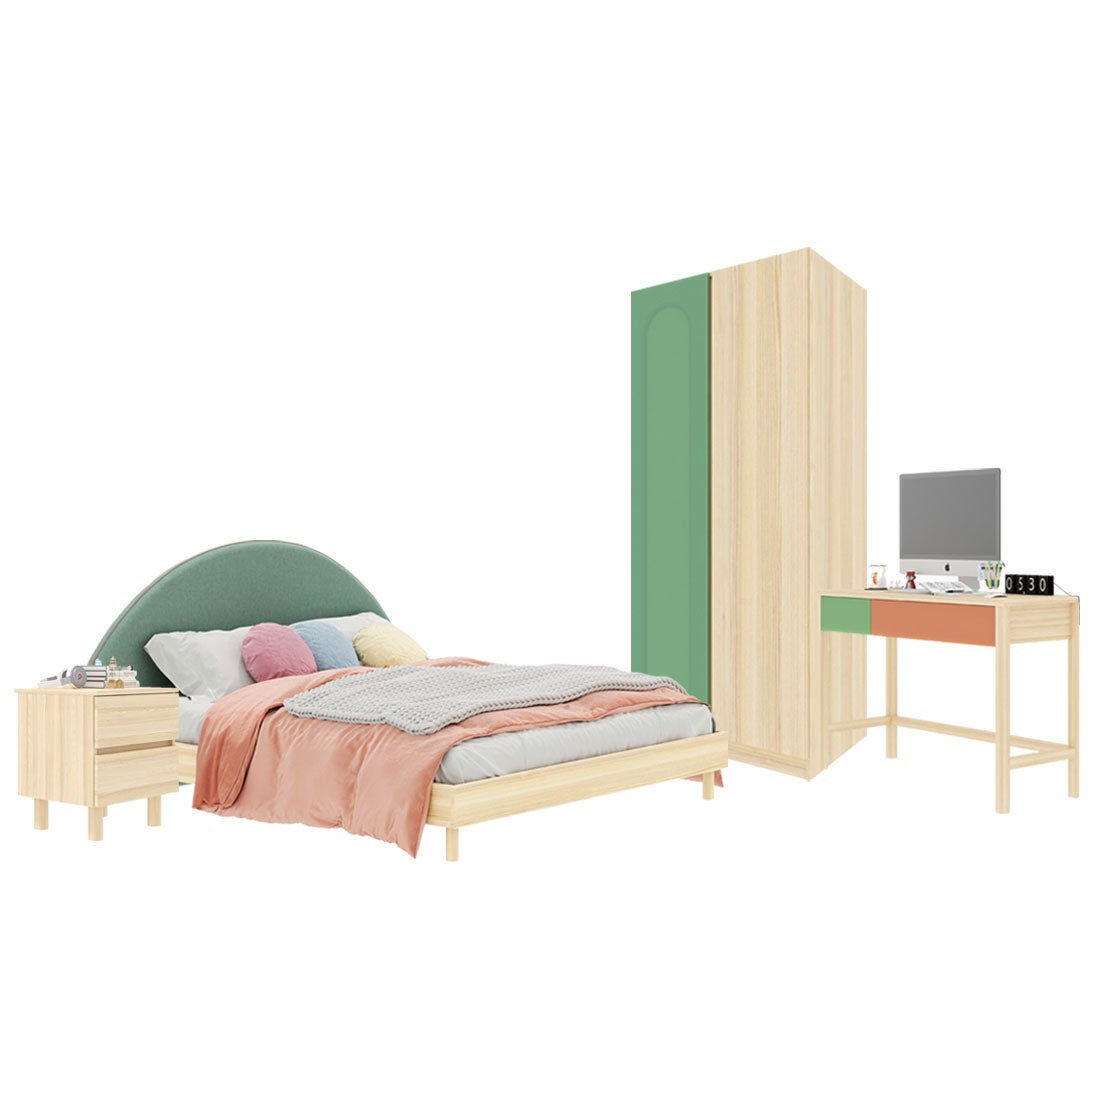 ชุดห้องนอน ขนาด 5 ฟุต-เบาะเขียว รุ่น Bingsoo & ตู้เสื้อผ้า 90 ซม. พร้อมตู้ข้างเตียง สีเขียว1